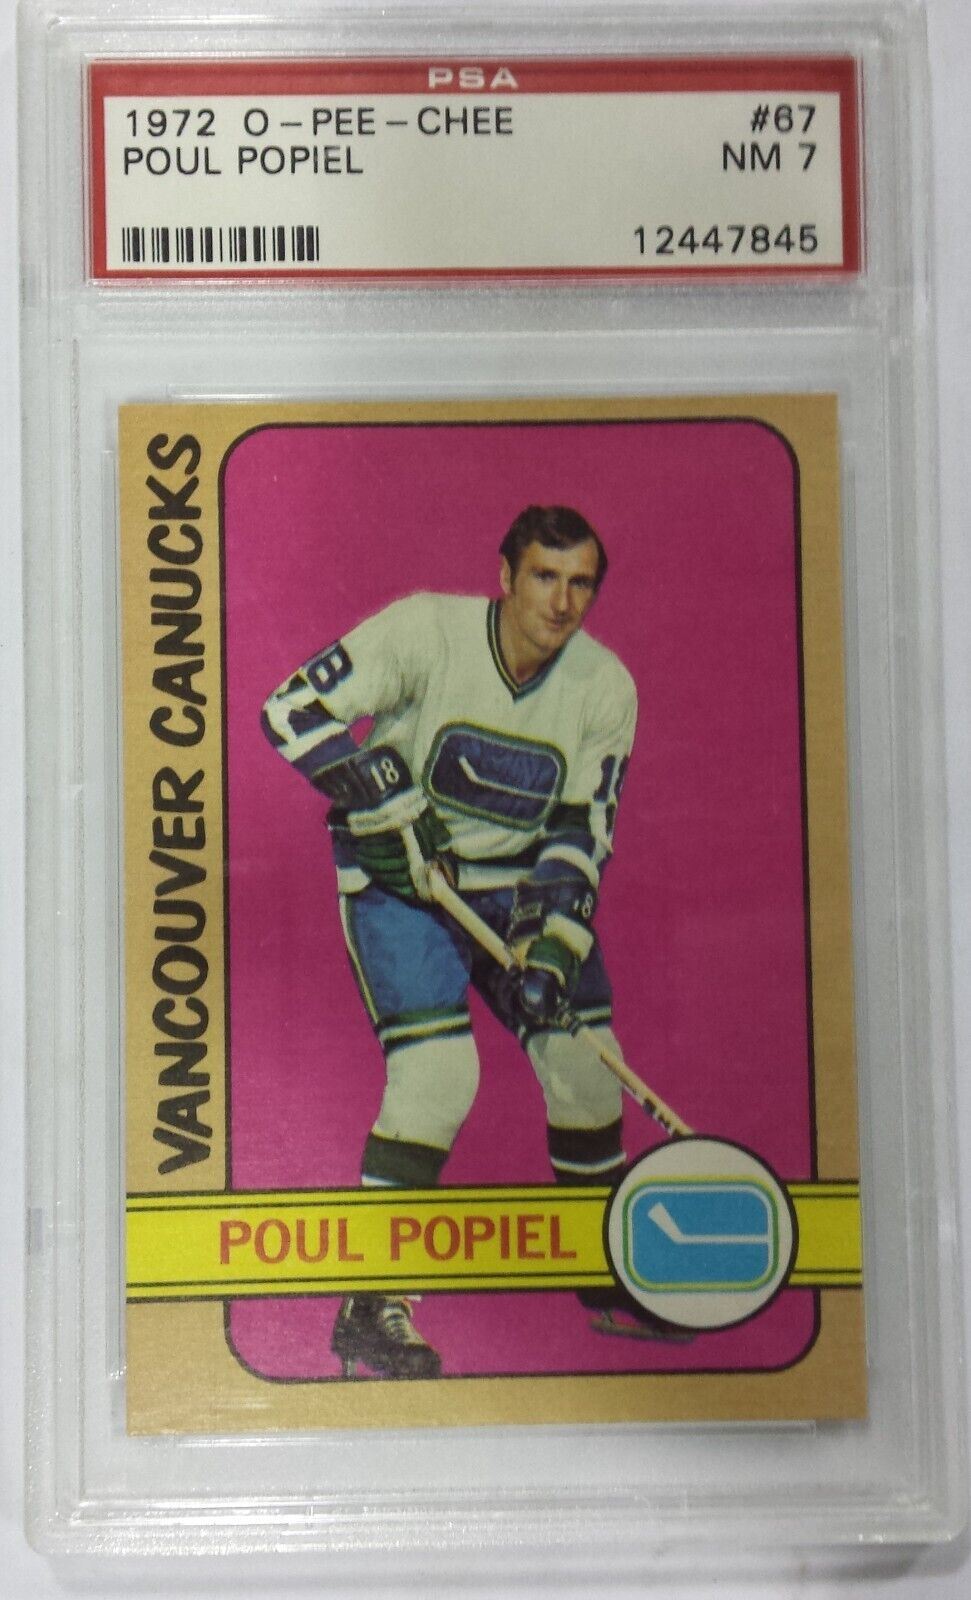 1972 O-Pee-Chee Poul Popiel #67 PSA NM 7, 12447845